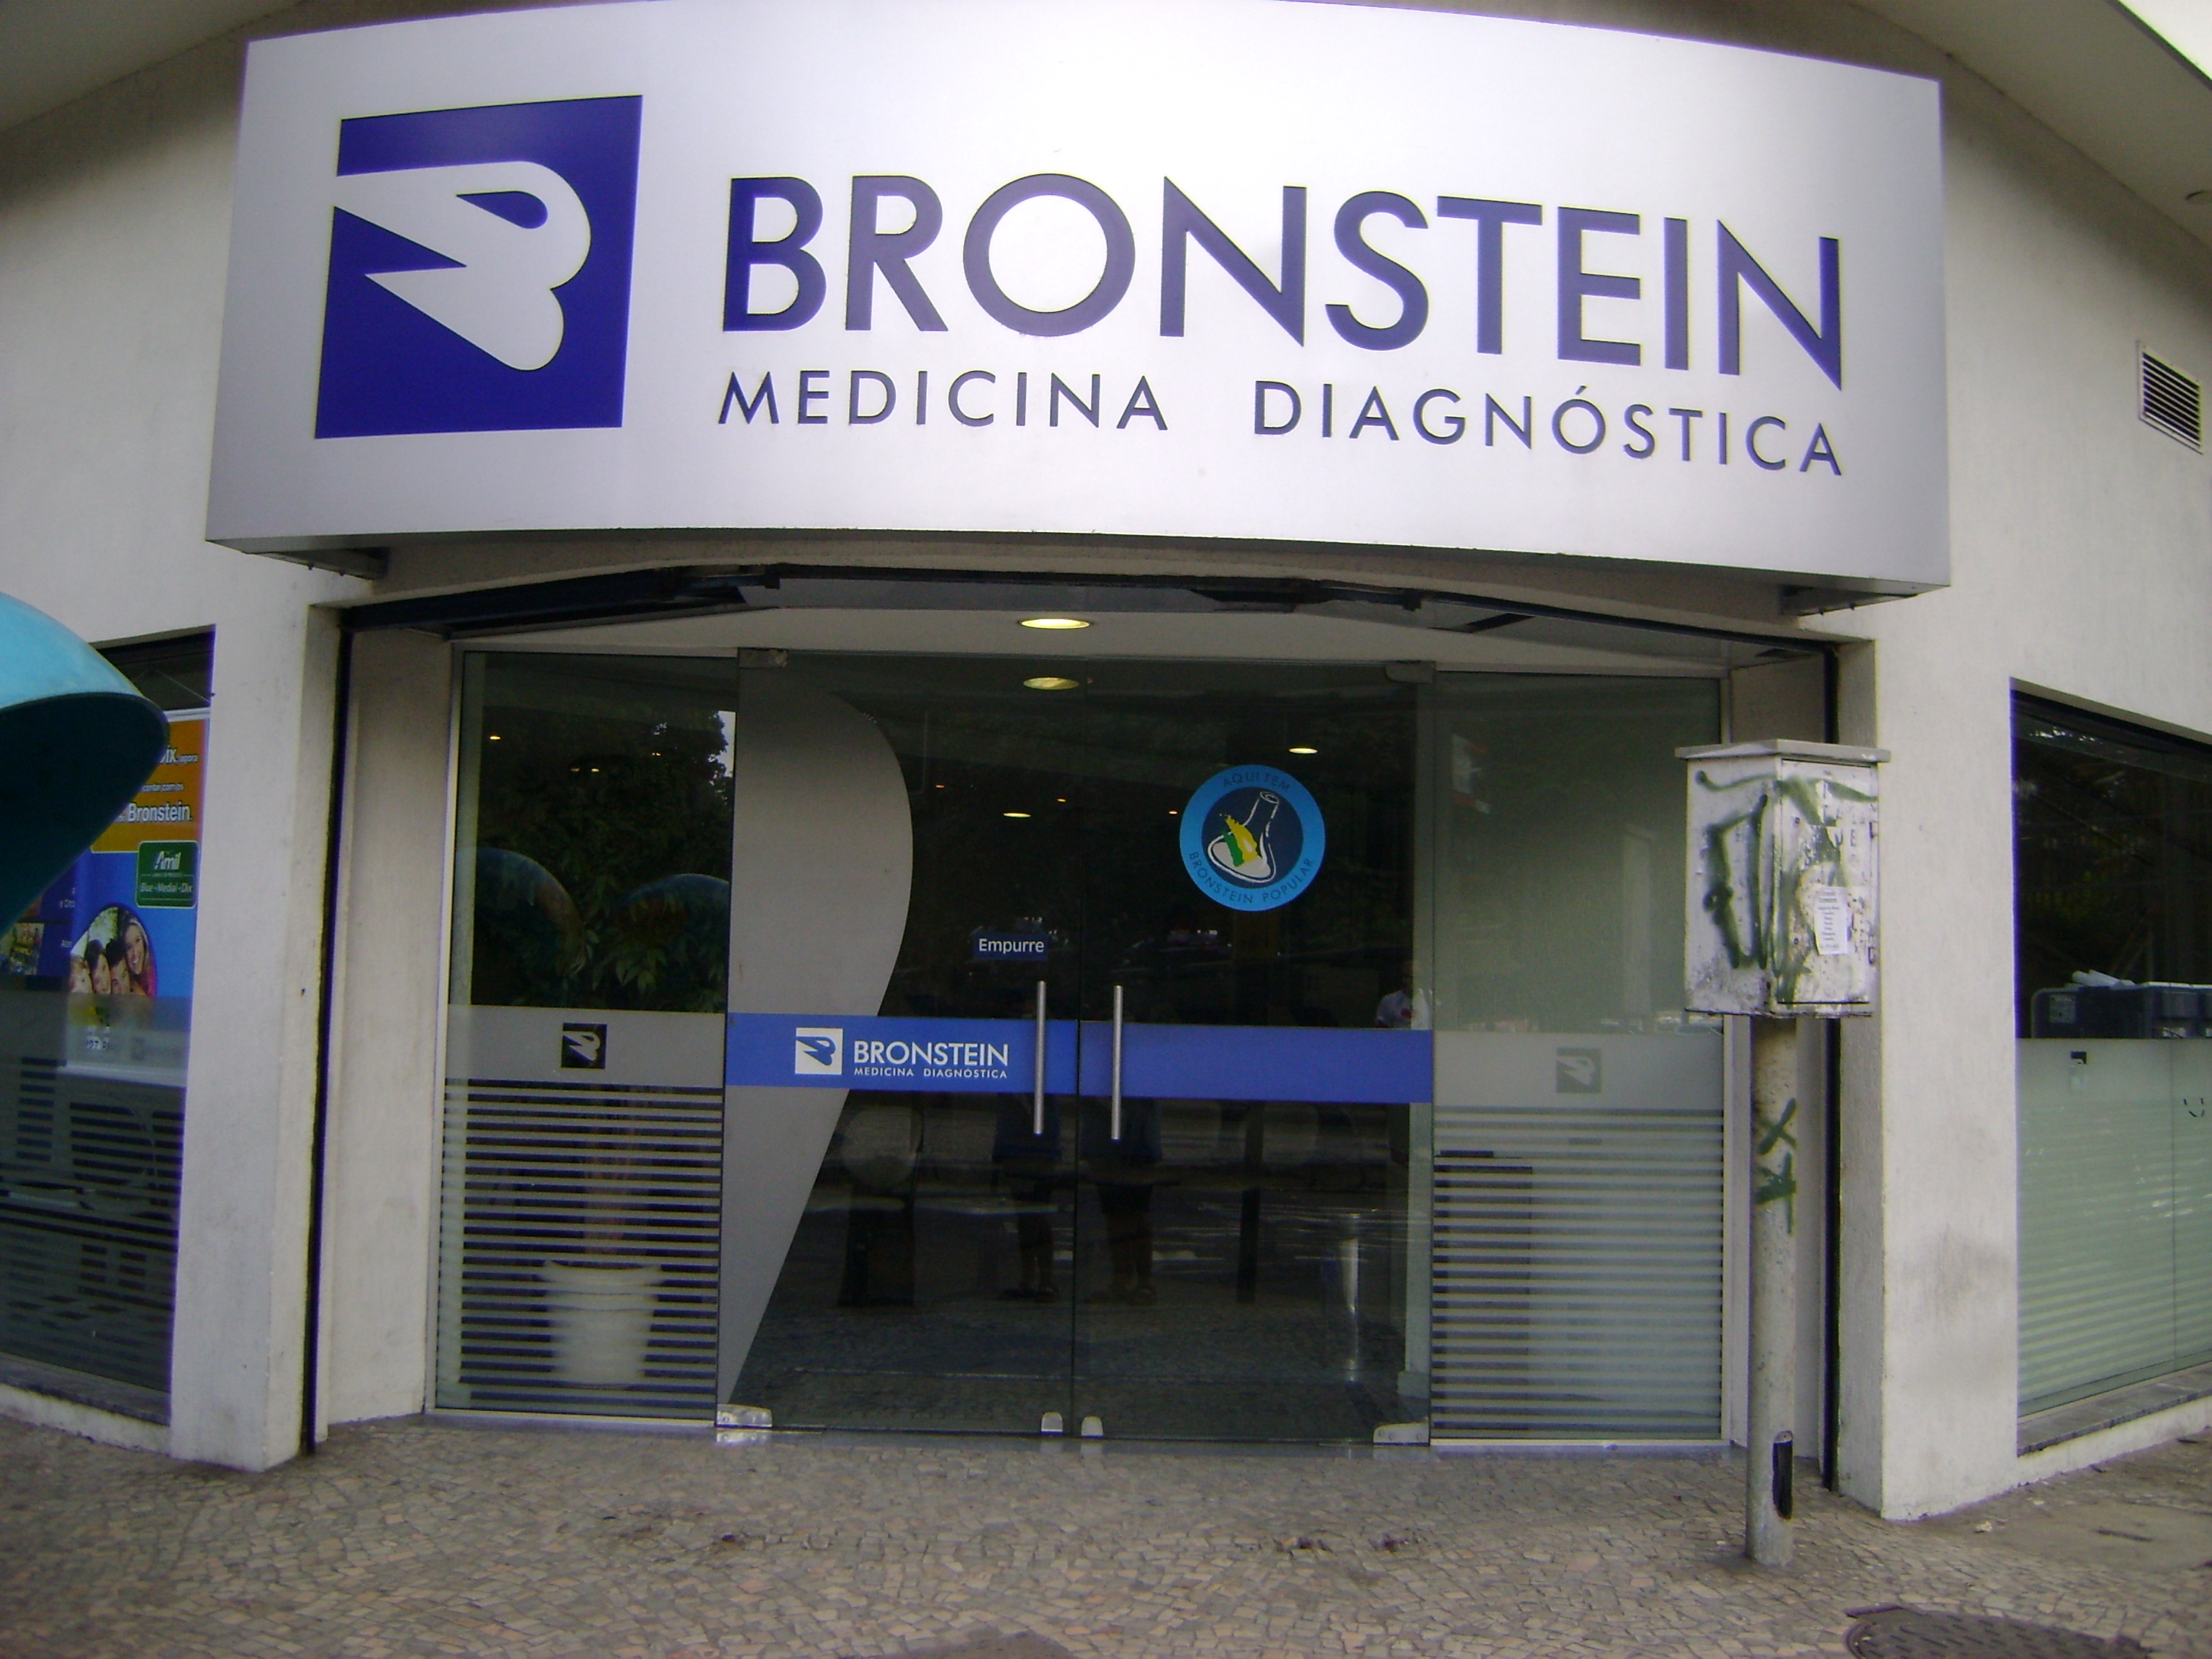 Como chegar até Bronstein Medicina Diagnóstica - Méier de Ônibus ou Trem?